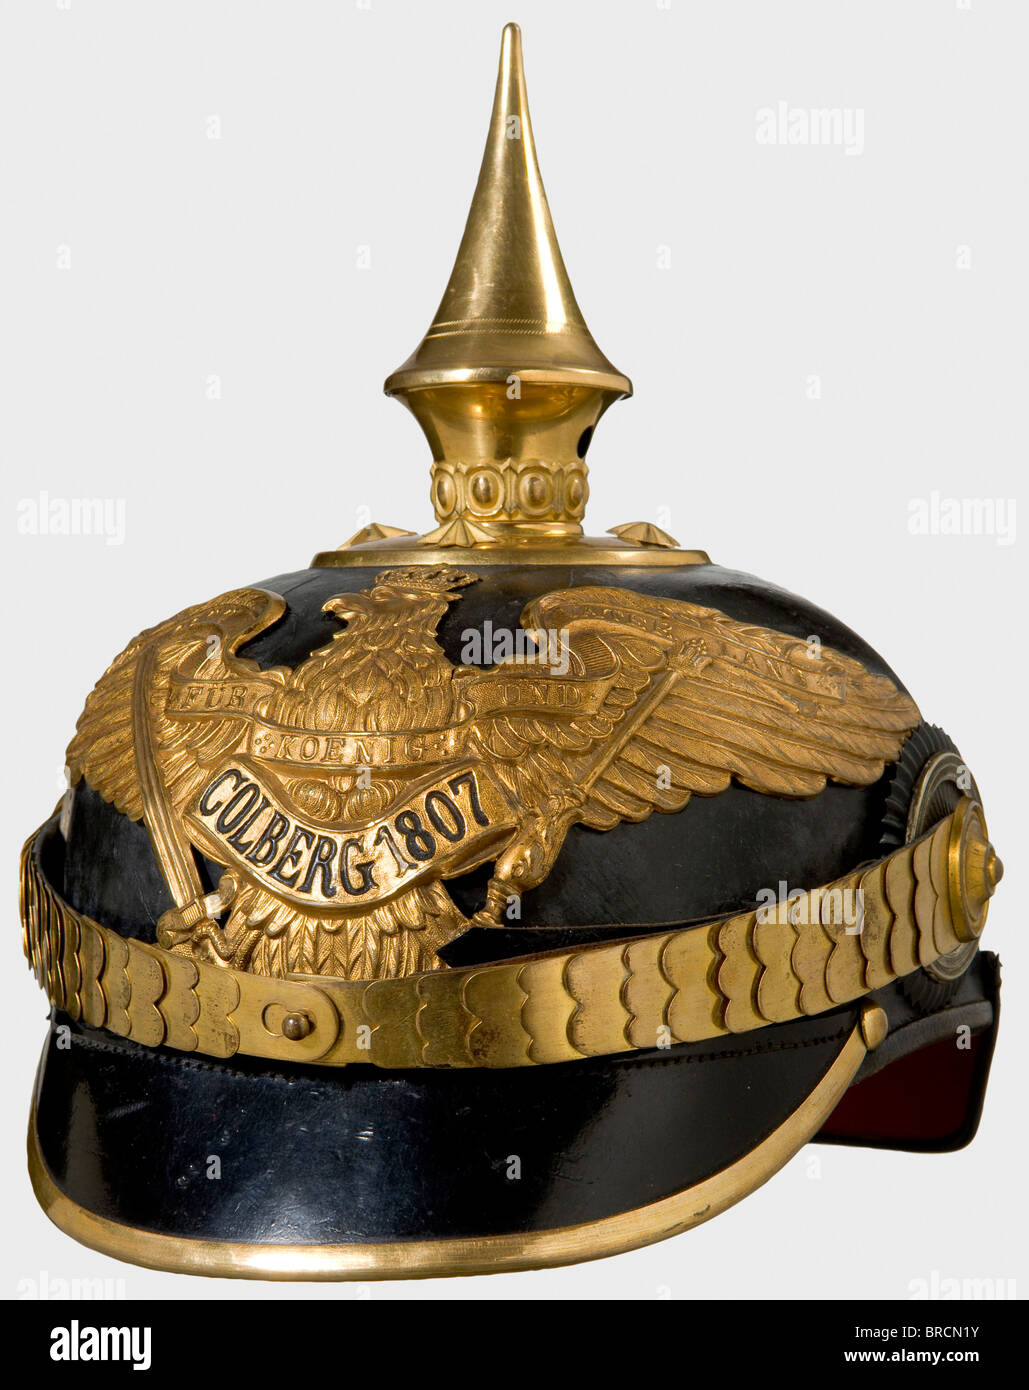 Un casque pour officiers prussiens, du corps de casque en cuir Colberg Grenadier Regiment comte Gneisenau (2ème Pomeranian) No 9 avec des garnitures dorées, un nouveau modèle de greneagle radier avec bandeau en relief 'Colberg 1807'. Balances plates, blattes d'officier, doublure en soie verte. Sur la surface laquée se trouve l'impression de l'ancienne aigle grenadier portée jusqu'au 16 juin 1913, ce casque a été modifié suivant les règlements. Historique, historique, 1910, XXe siècle, XIXe siècle, prussien, Prussia, allemand, Allemagne, militaria, militaire, objet, alambics, écrêtage, cl, Banque D'Images